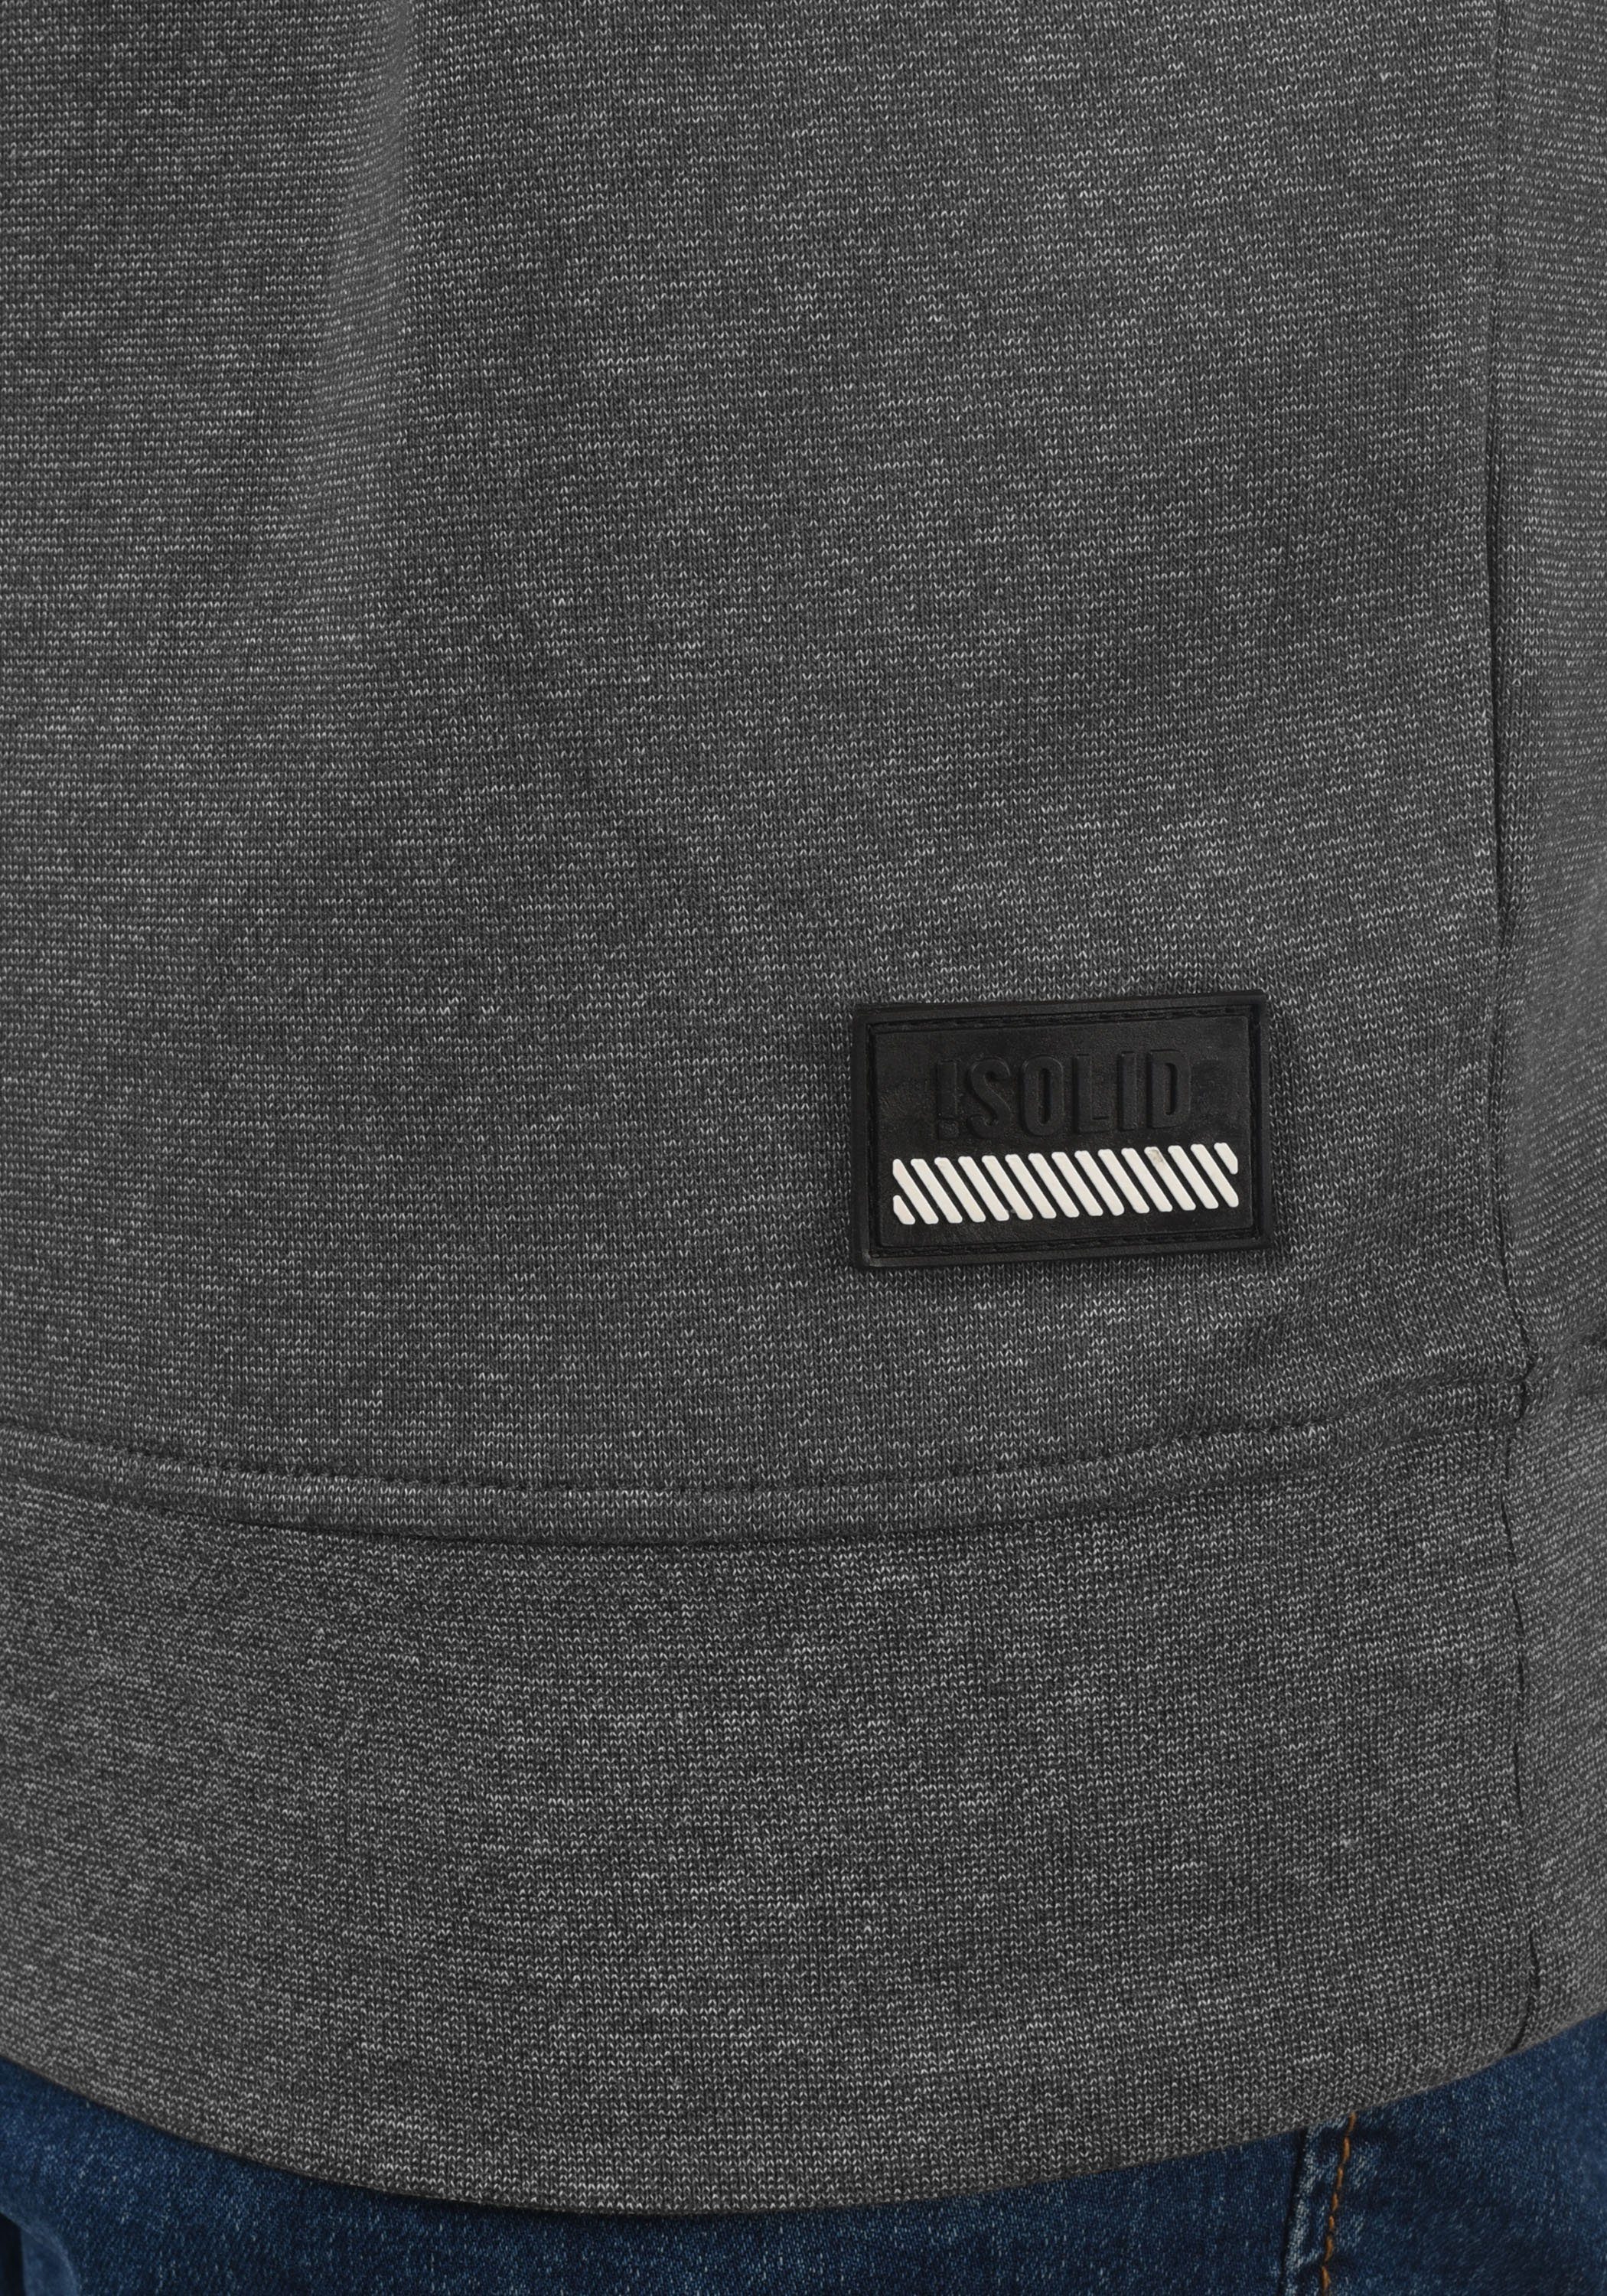 Solid Hoodie SDBekir mit Musterung und Forged (193907) Kordelzug Kapuzensweatshirt Iron